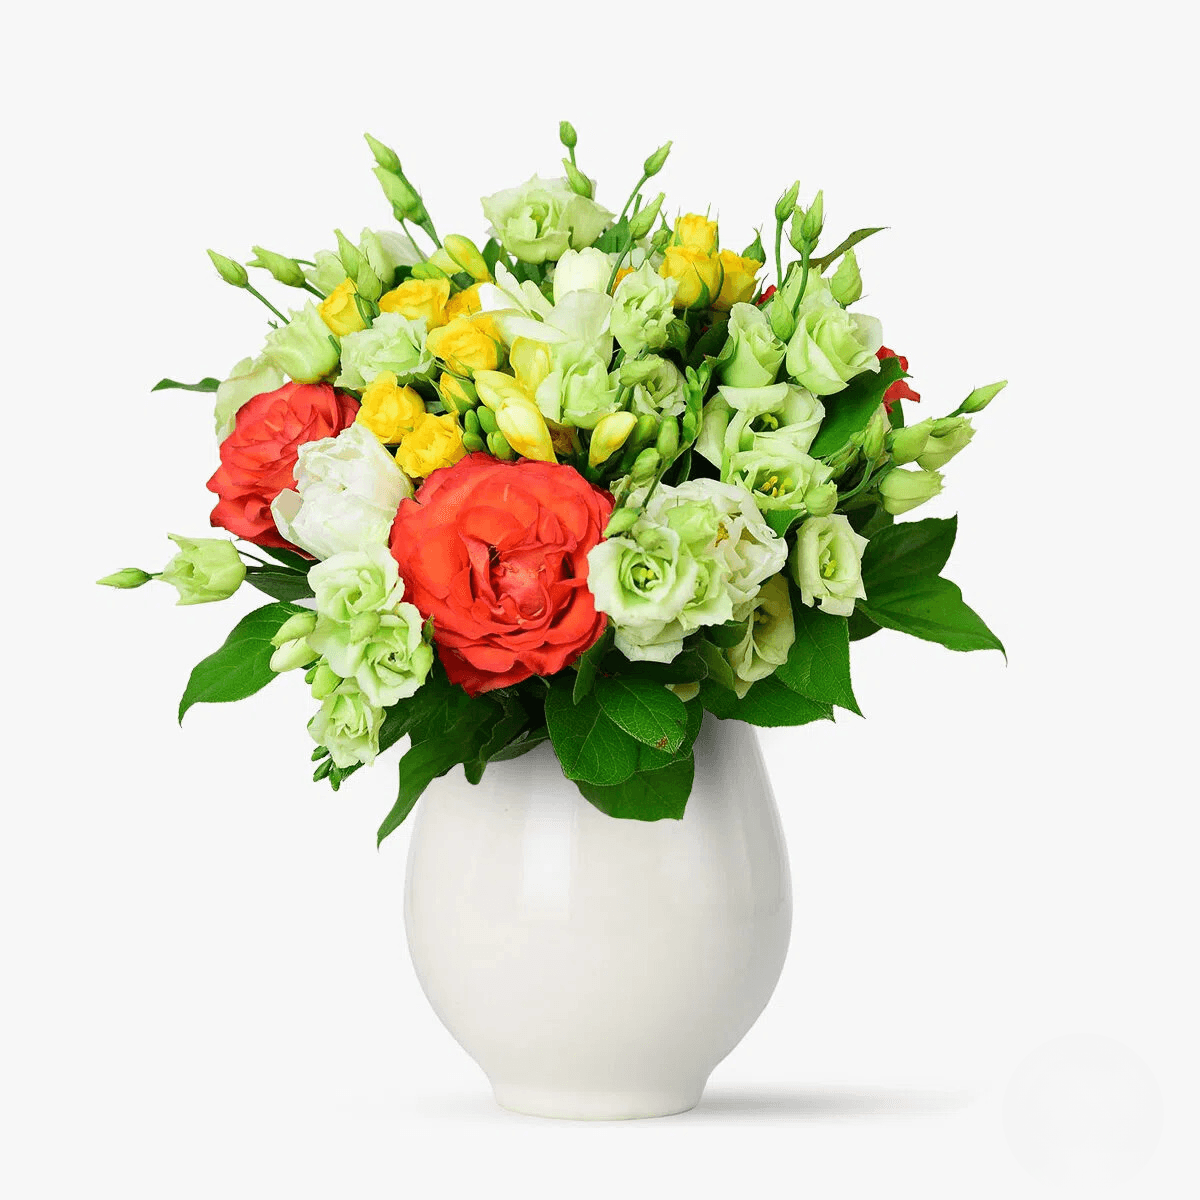 Buchet de flori cu trandafiri portocalii, minirosa galben, lisianthus alb Cantec floral